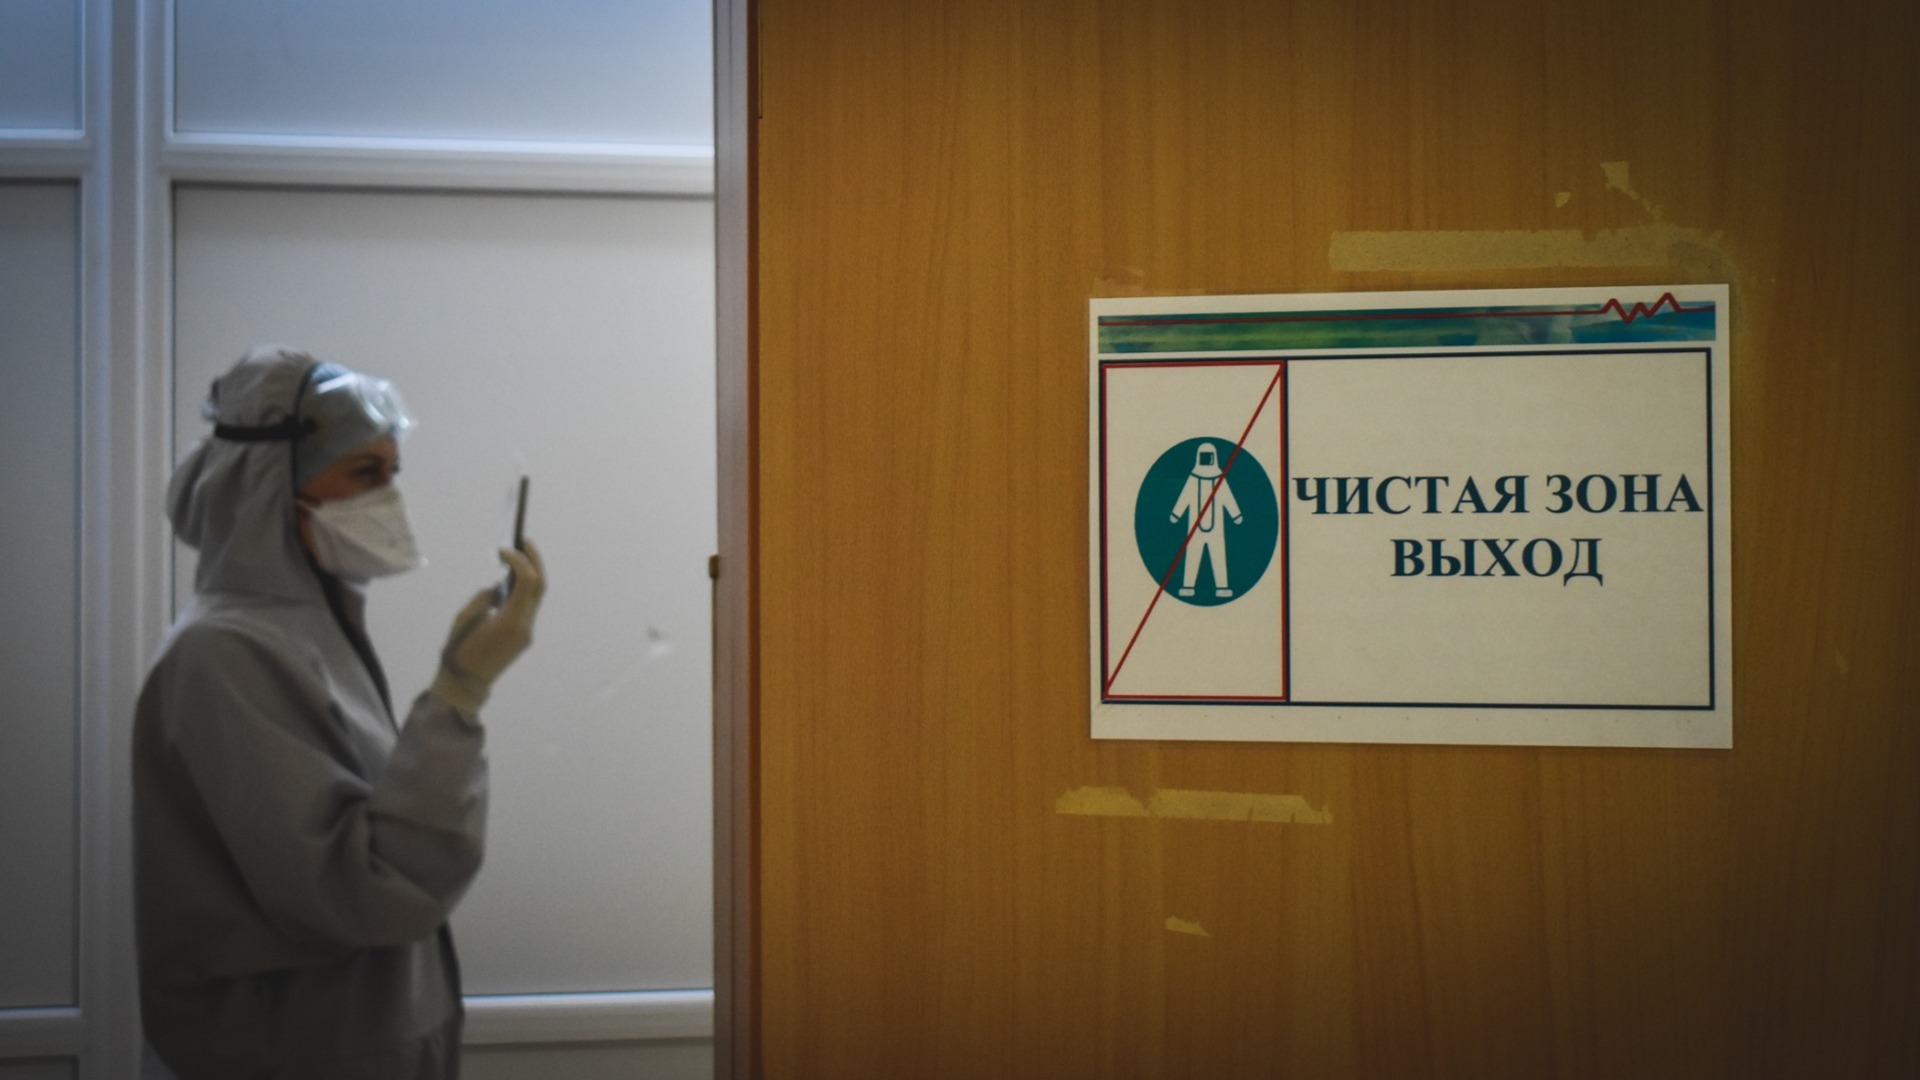 Скандального пластического хирурга клиники Persona Nova будут судить в Тюмени